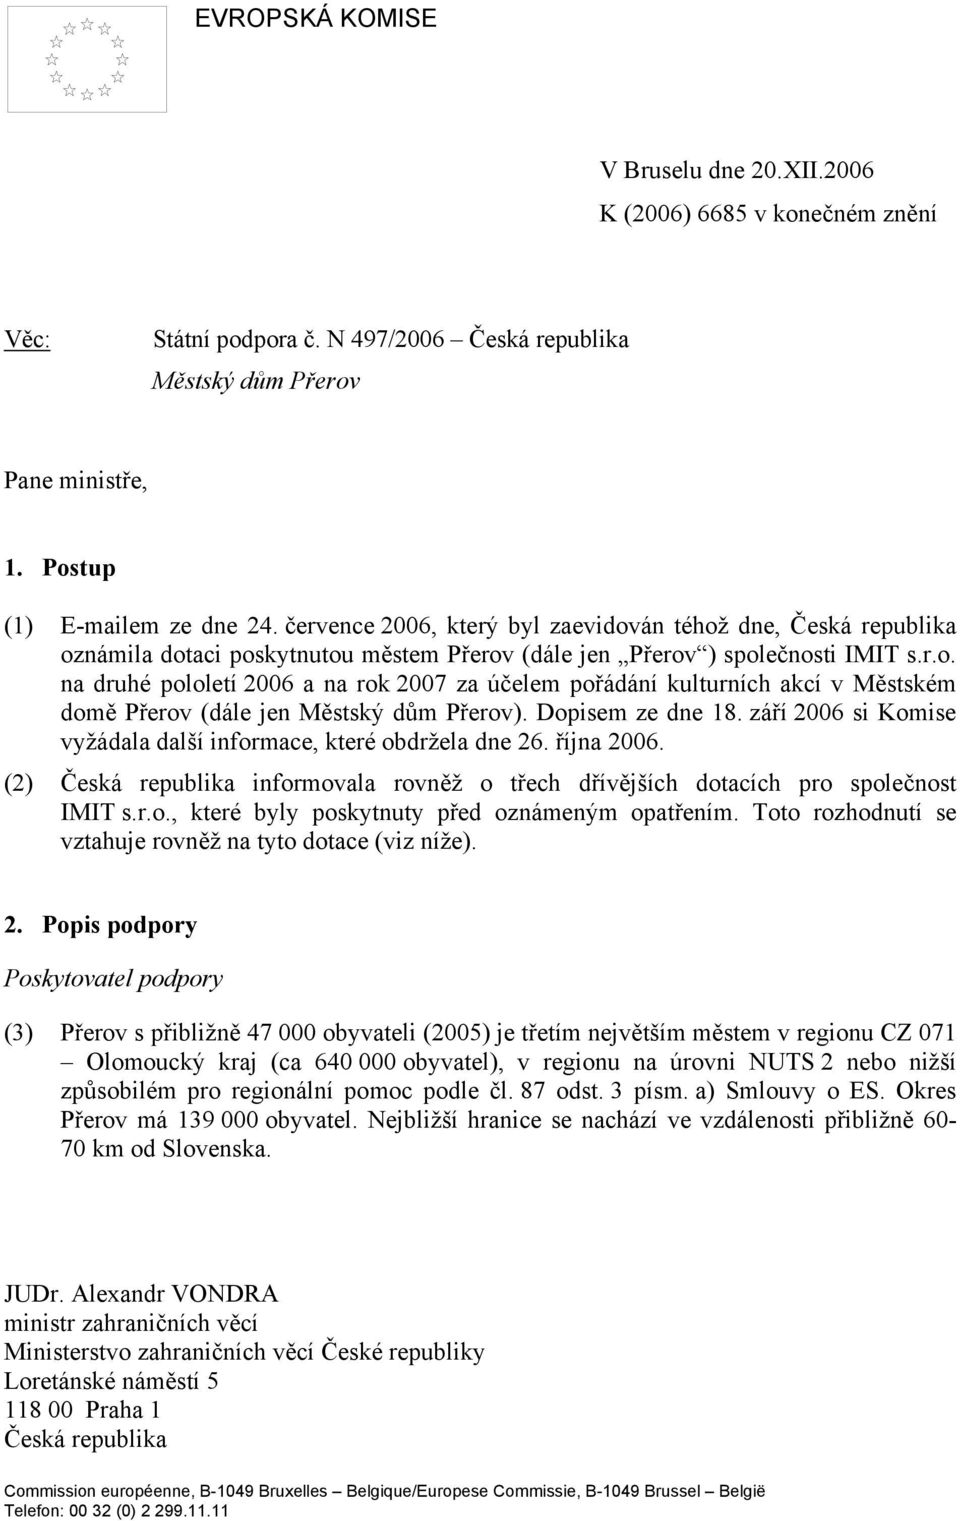 Dopisem ze dne 18. září 2006 si Komise vyžádala další informace, které obdržela dne 26. října 2006. (2) Česká republika informovala rovněž o třech dřívějších dotacích pro společnost IMIT s.r.o., které byly poskytnuty před oznámeným opatřením.